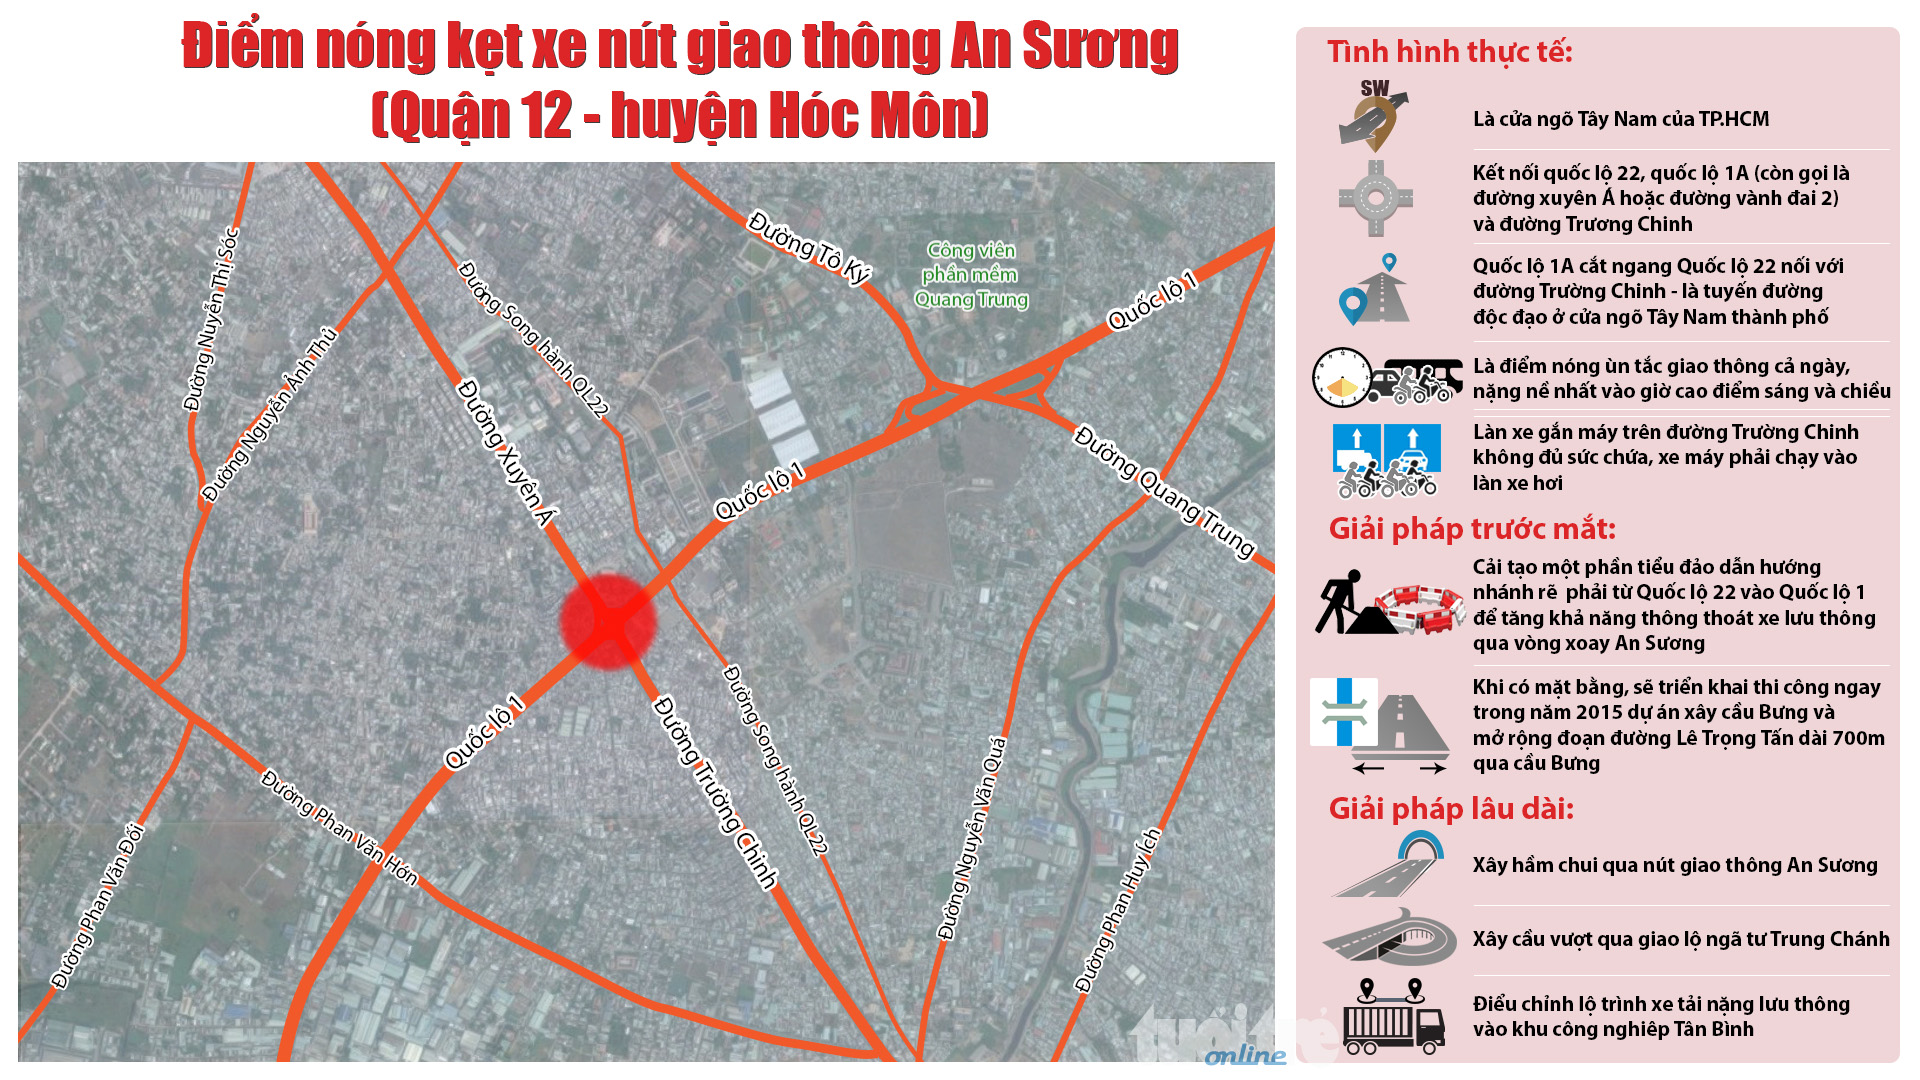 Điểm nóng kẹt xe nút giao thông ngã tư An Sương (quận 12 - huyện Hóc Môn): thực trạng và giải pháp đề xuất - Đồ họa: Việt Thái - T.Thiên